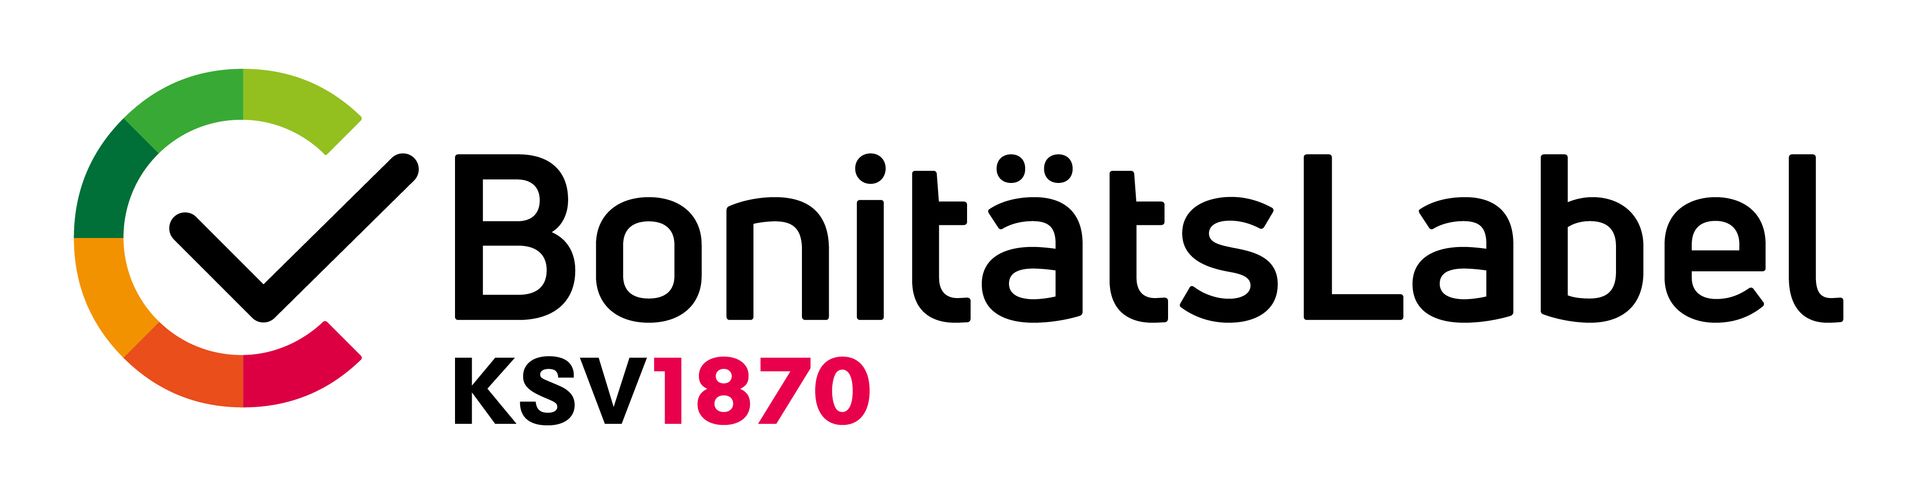 KSV1870 BonitätsLabel Logo